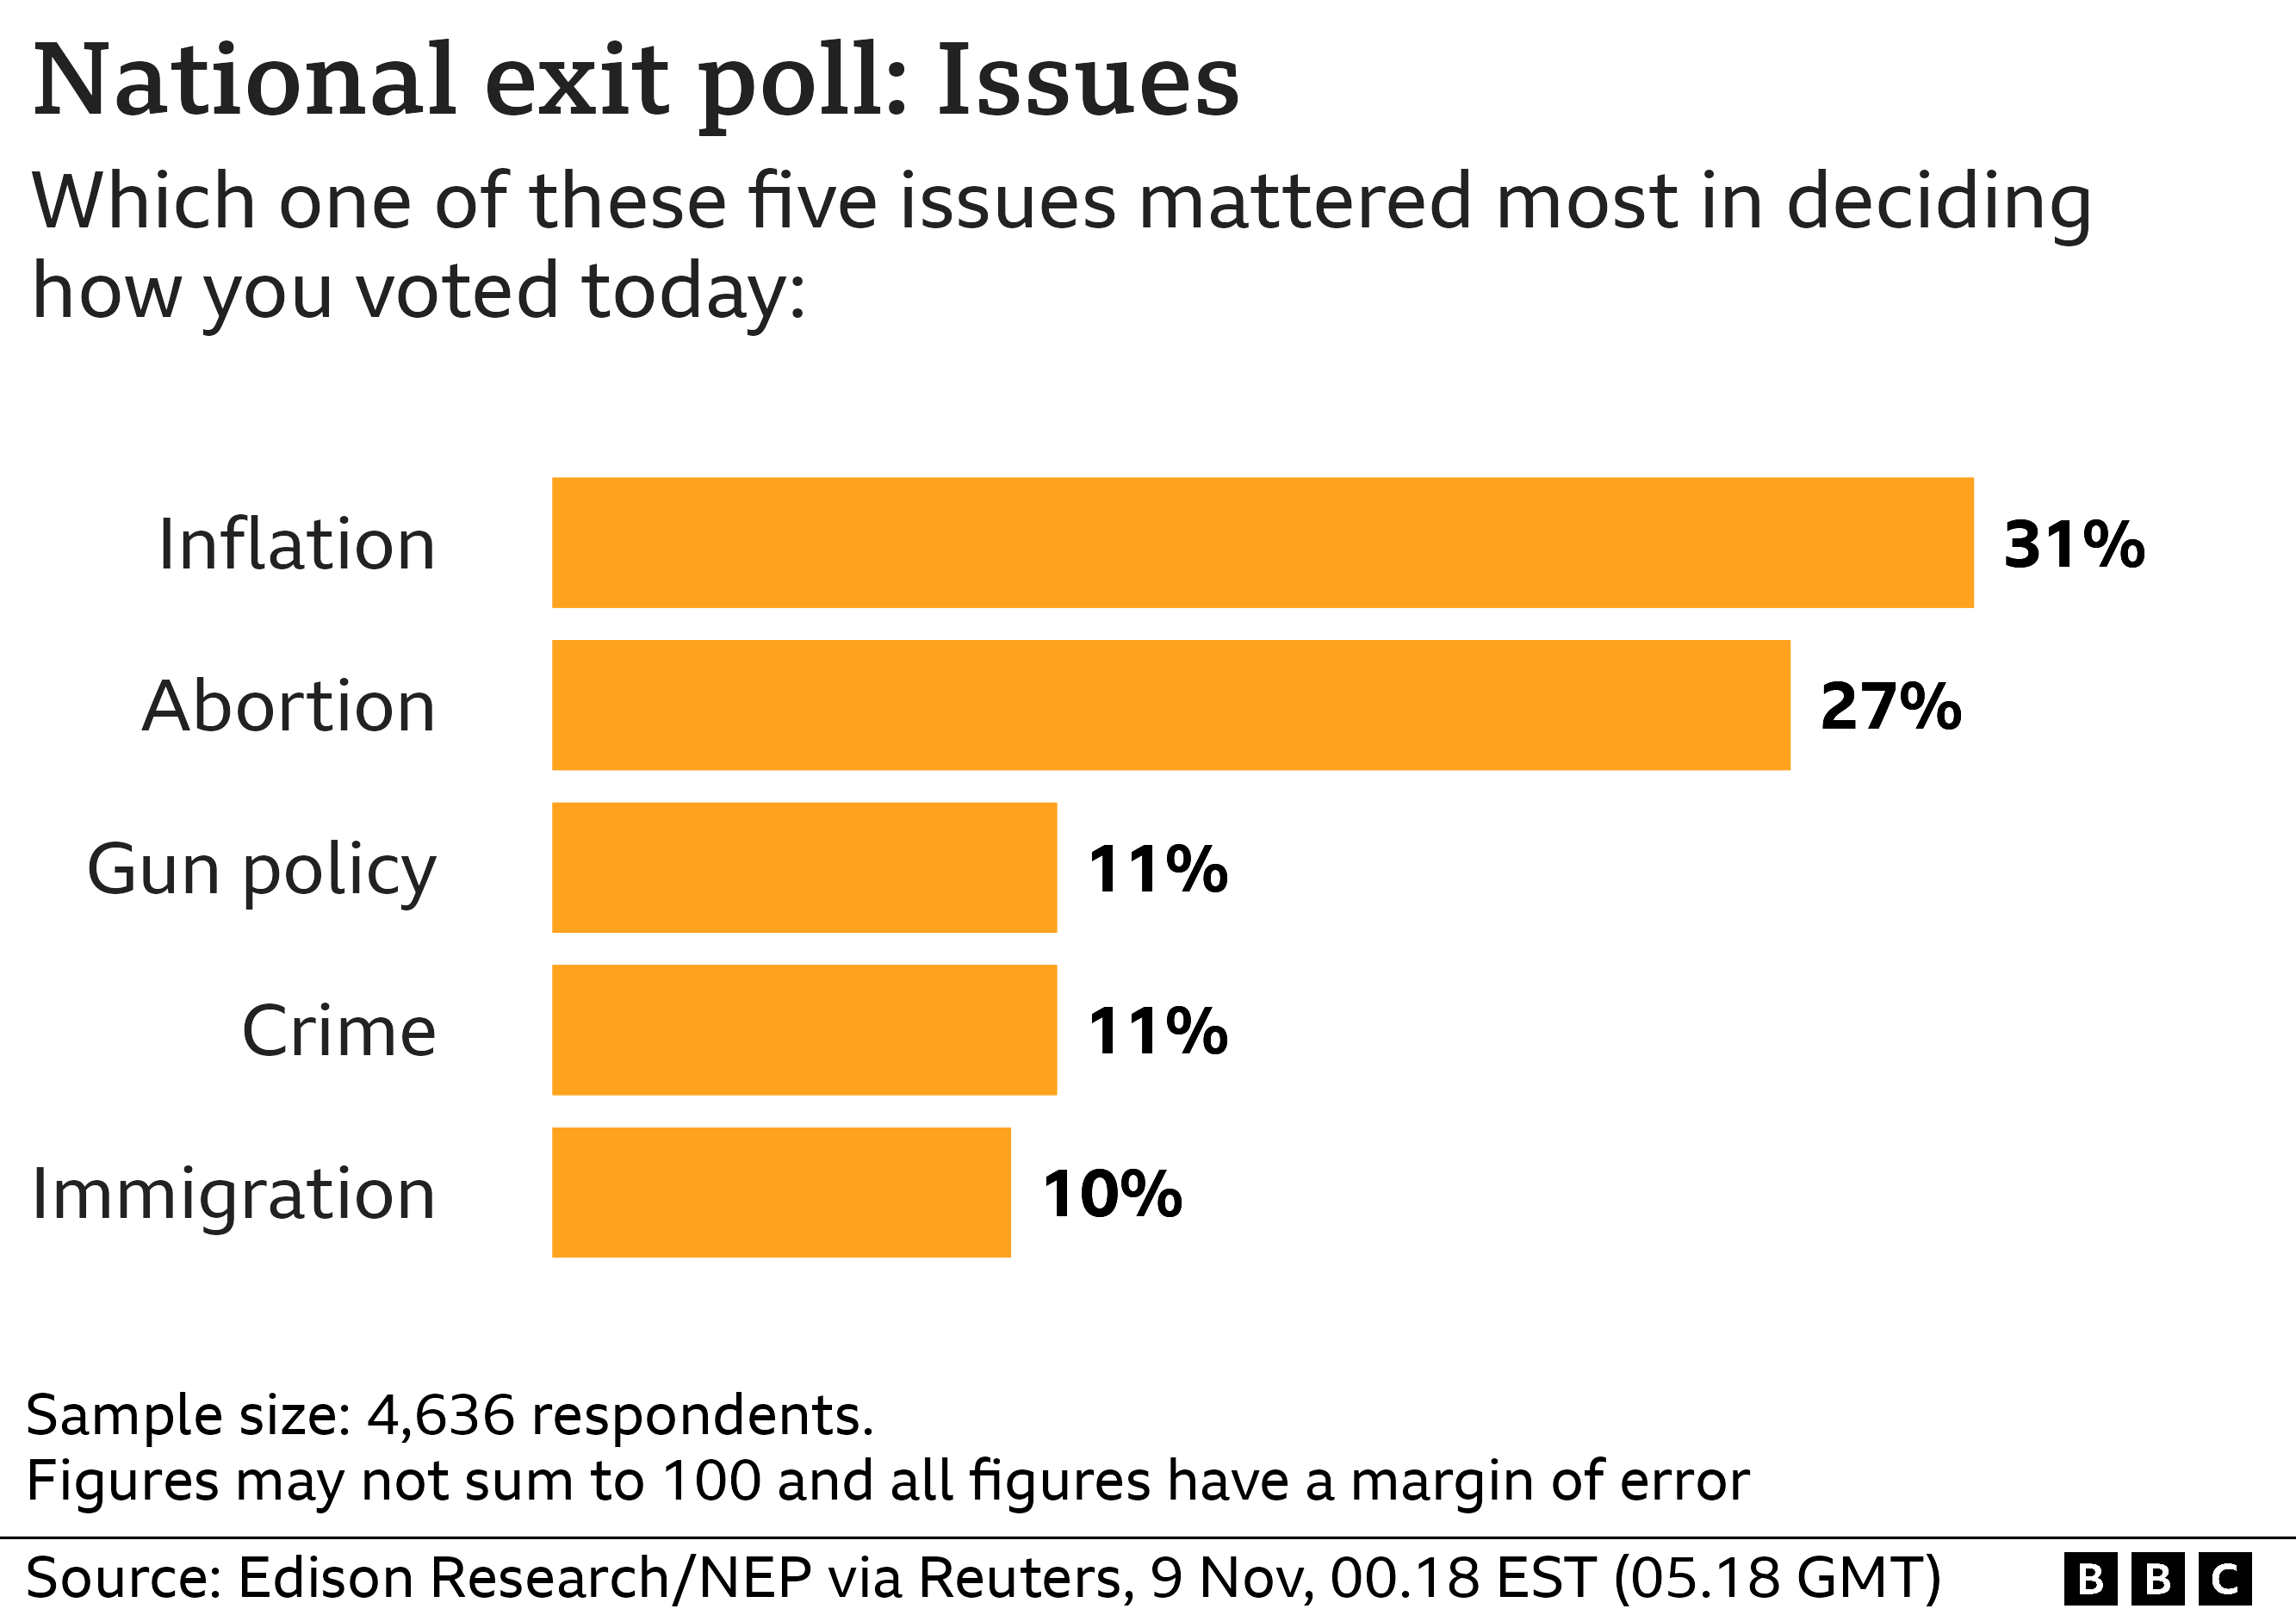 Диаграмма опроса на выходе: какой из этих пяти вопросов имел наибольшее значение при принятии решения о том, как вы проголосовали сегодня? Инфляция: 31%, аборты: 27%, политика в отношении оружия: 11%, преступность: 11%, иммиграция: 10%